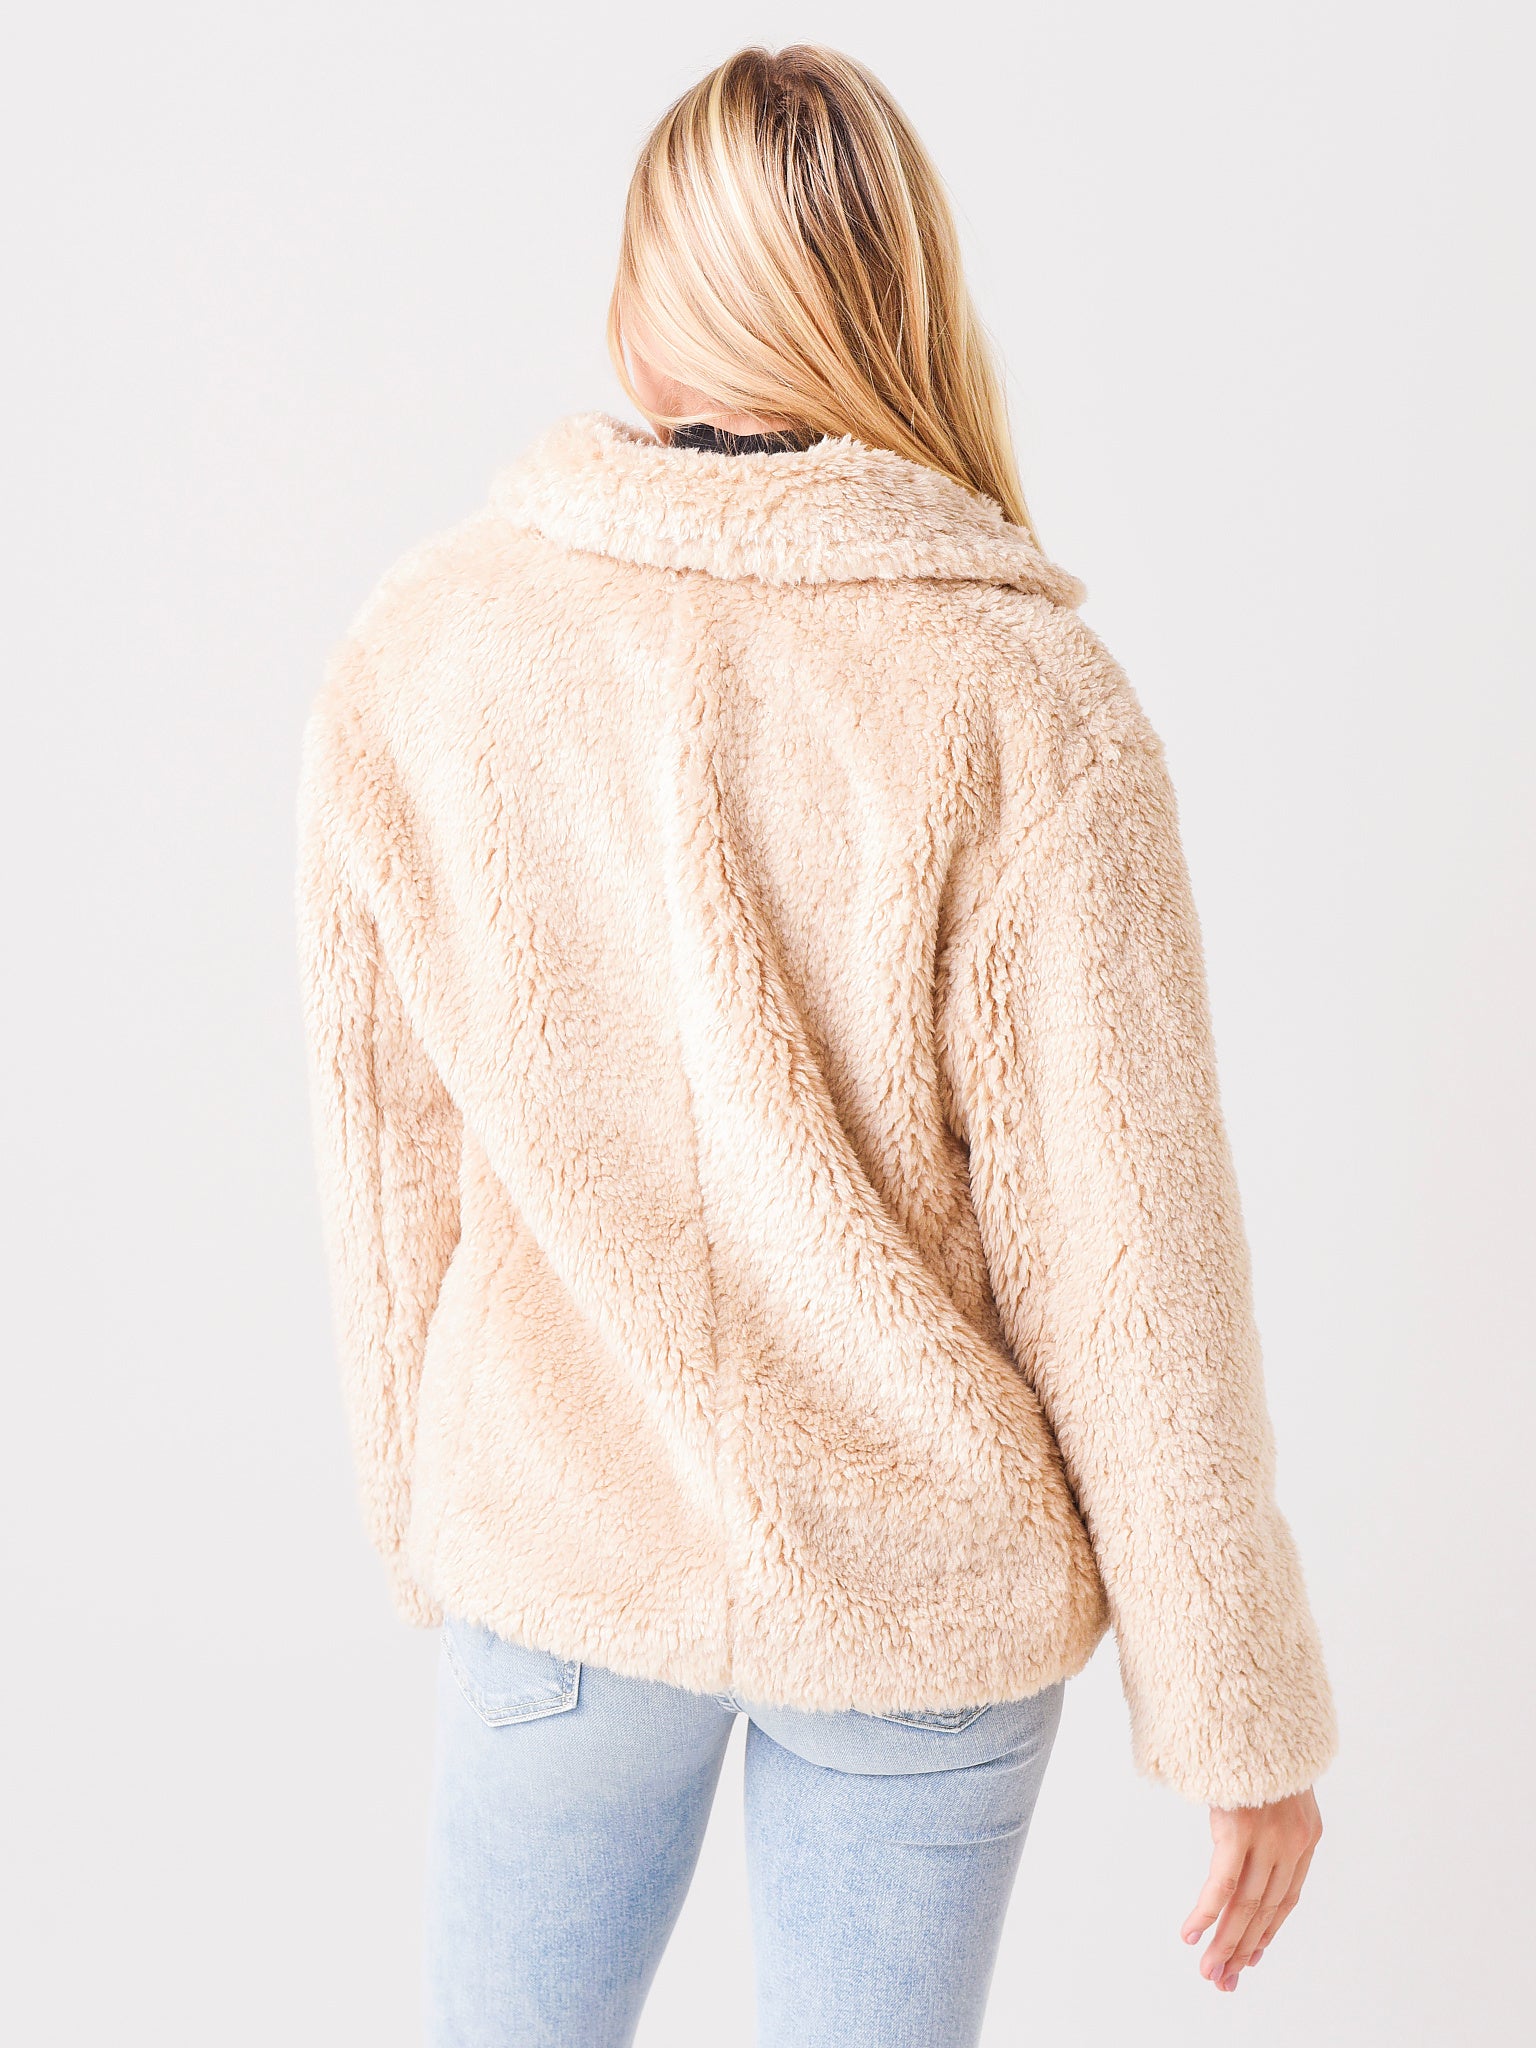 Vince Women's Textured Faux Fur Jacket - Saint Bernard